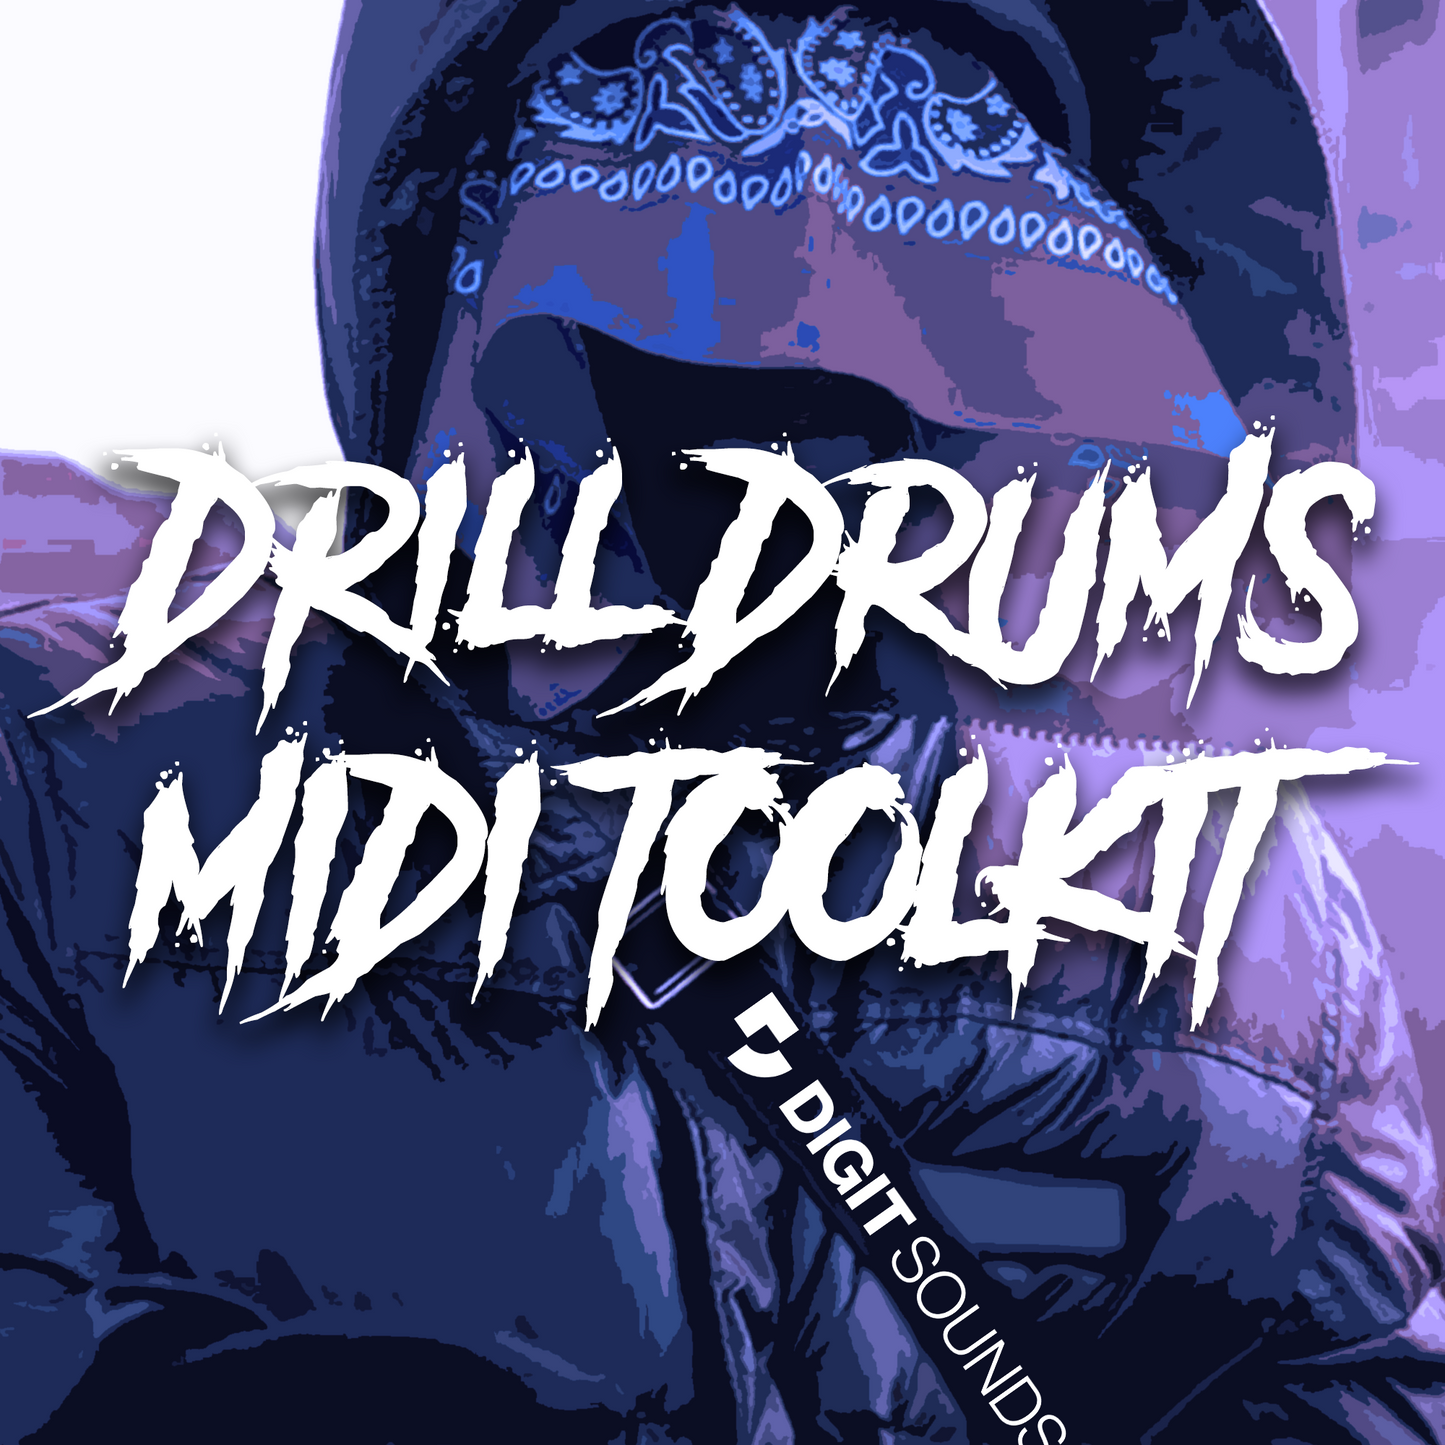 Serial Drillers Drum Kit + 2 Bonus MIDI Kits